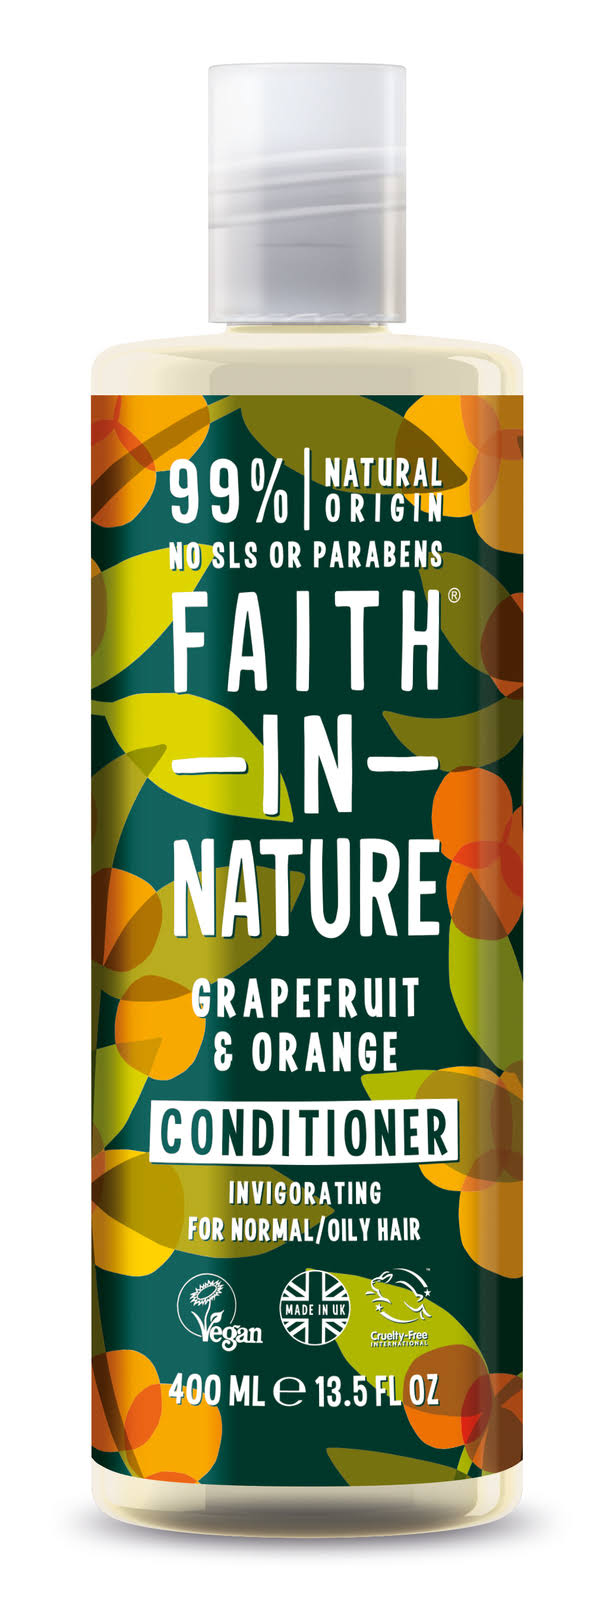 Faith in Nature Grapefruit and Orange Conditioner - 400ml